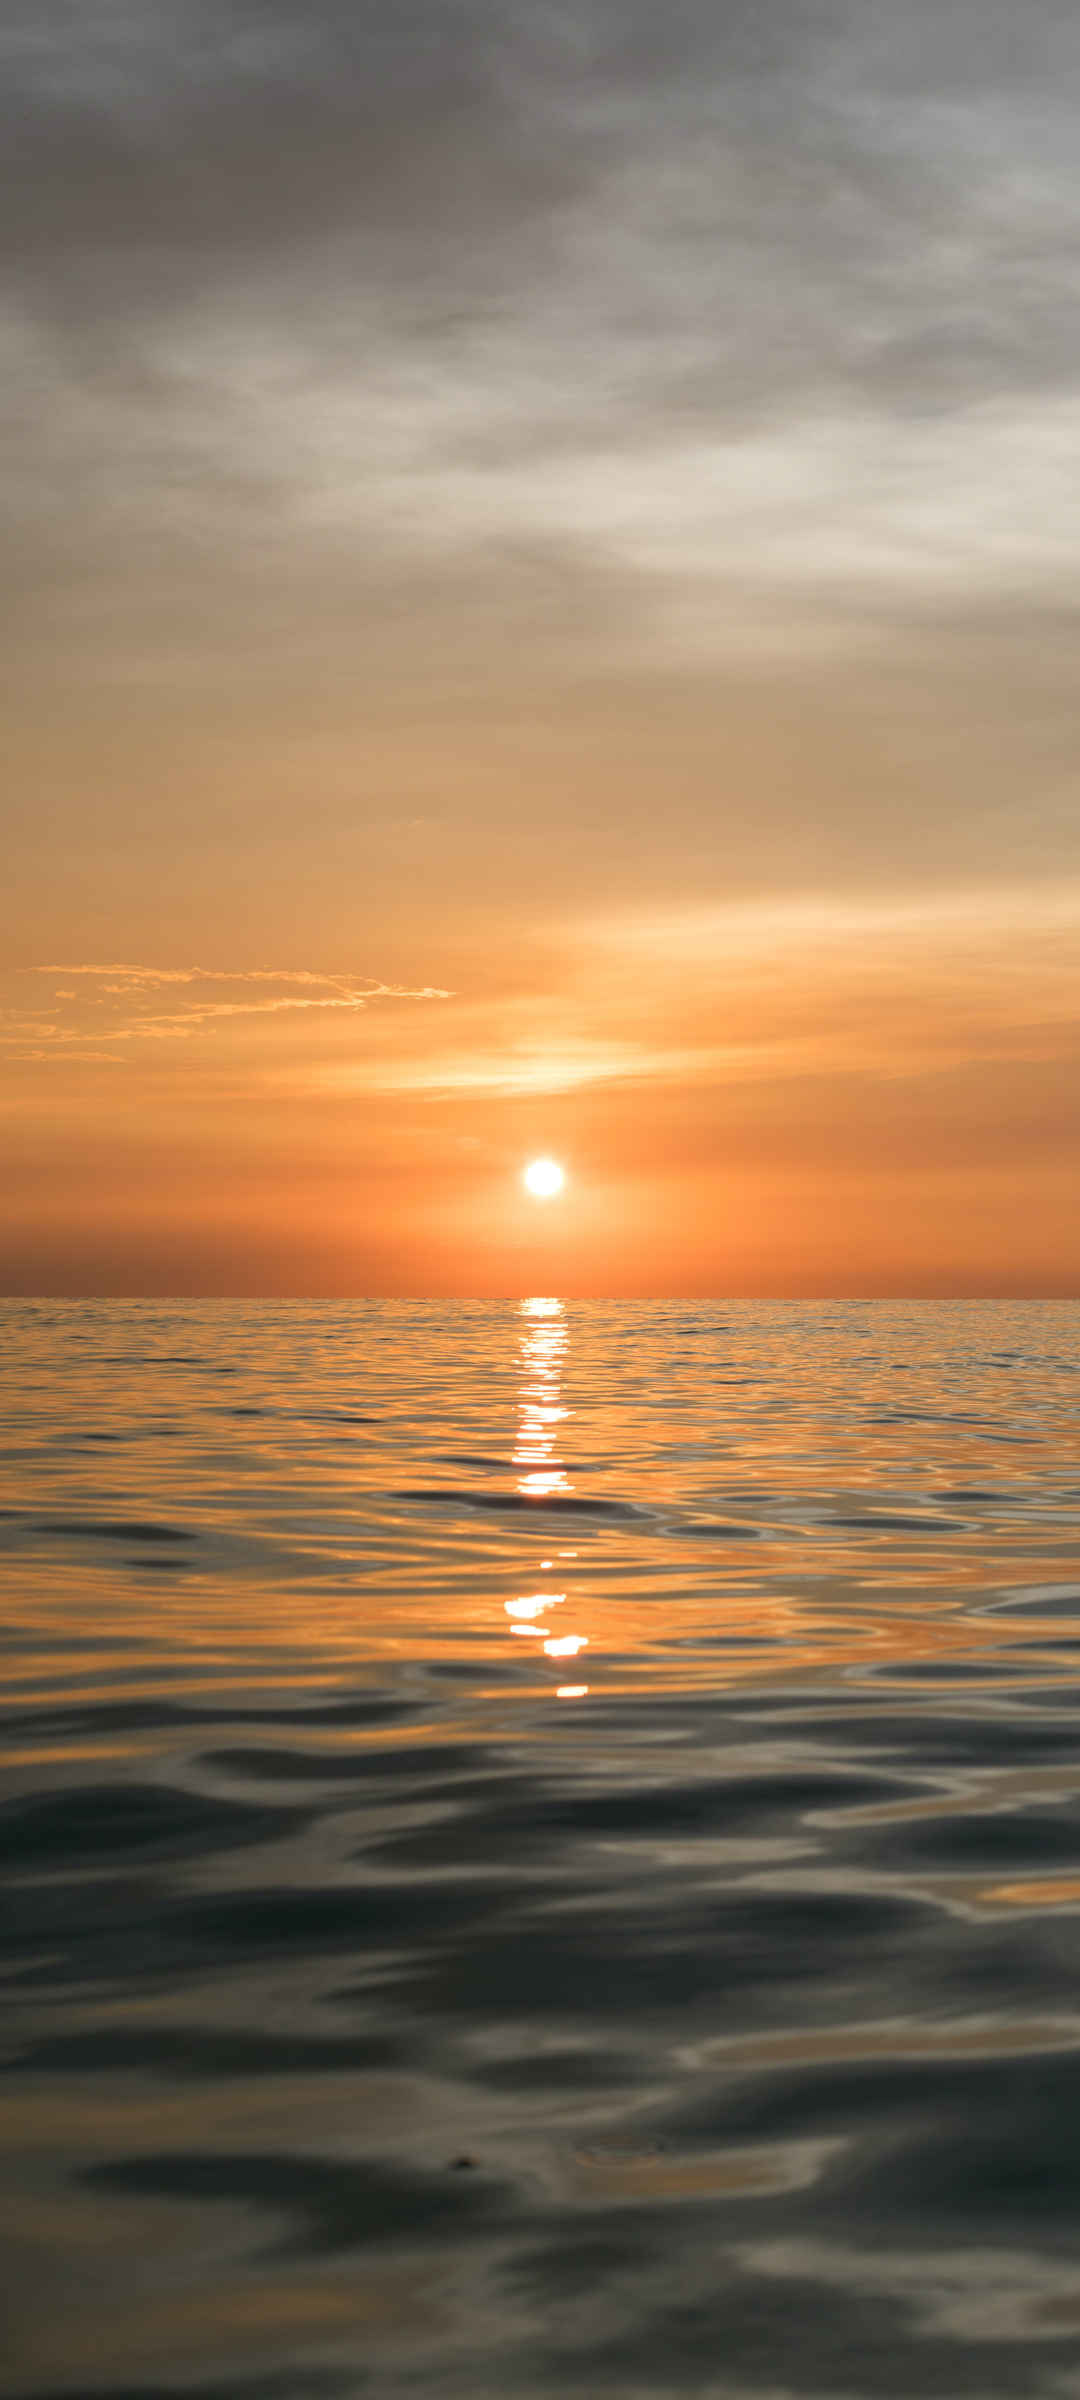 海上日落风景图桌面壁纸-